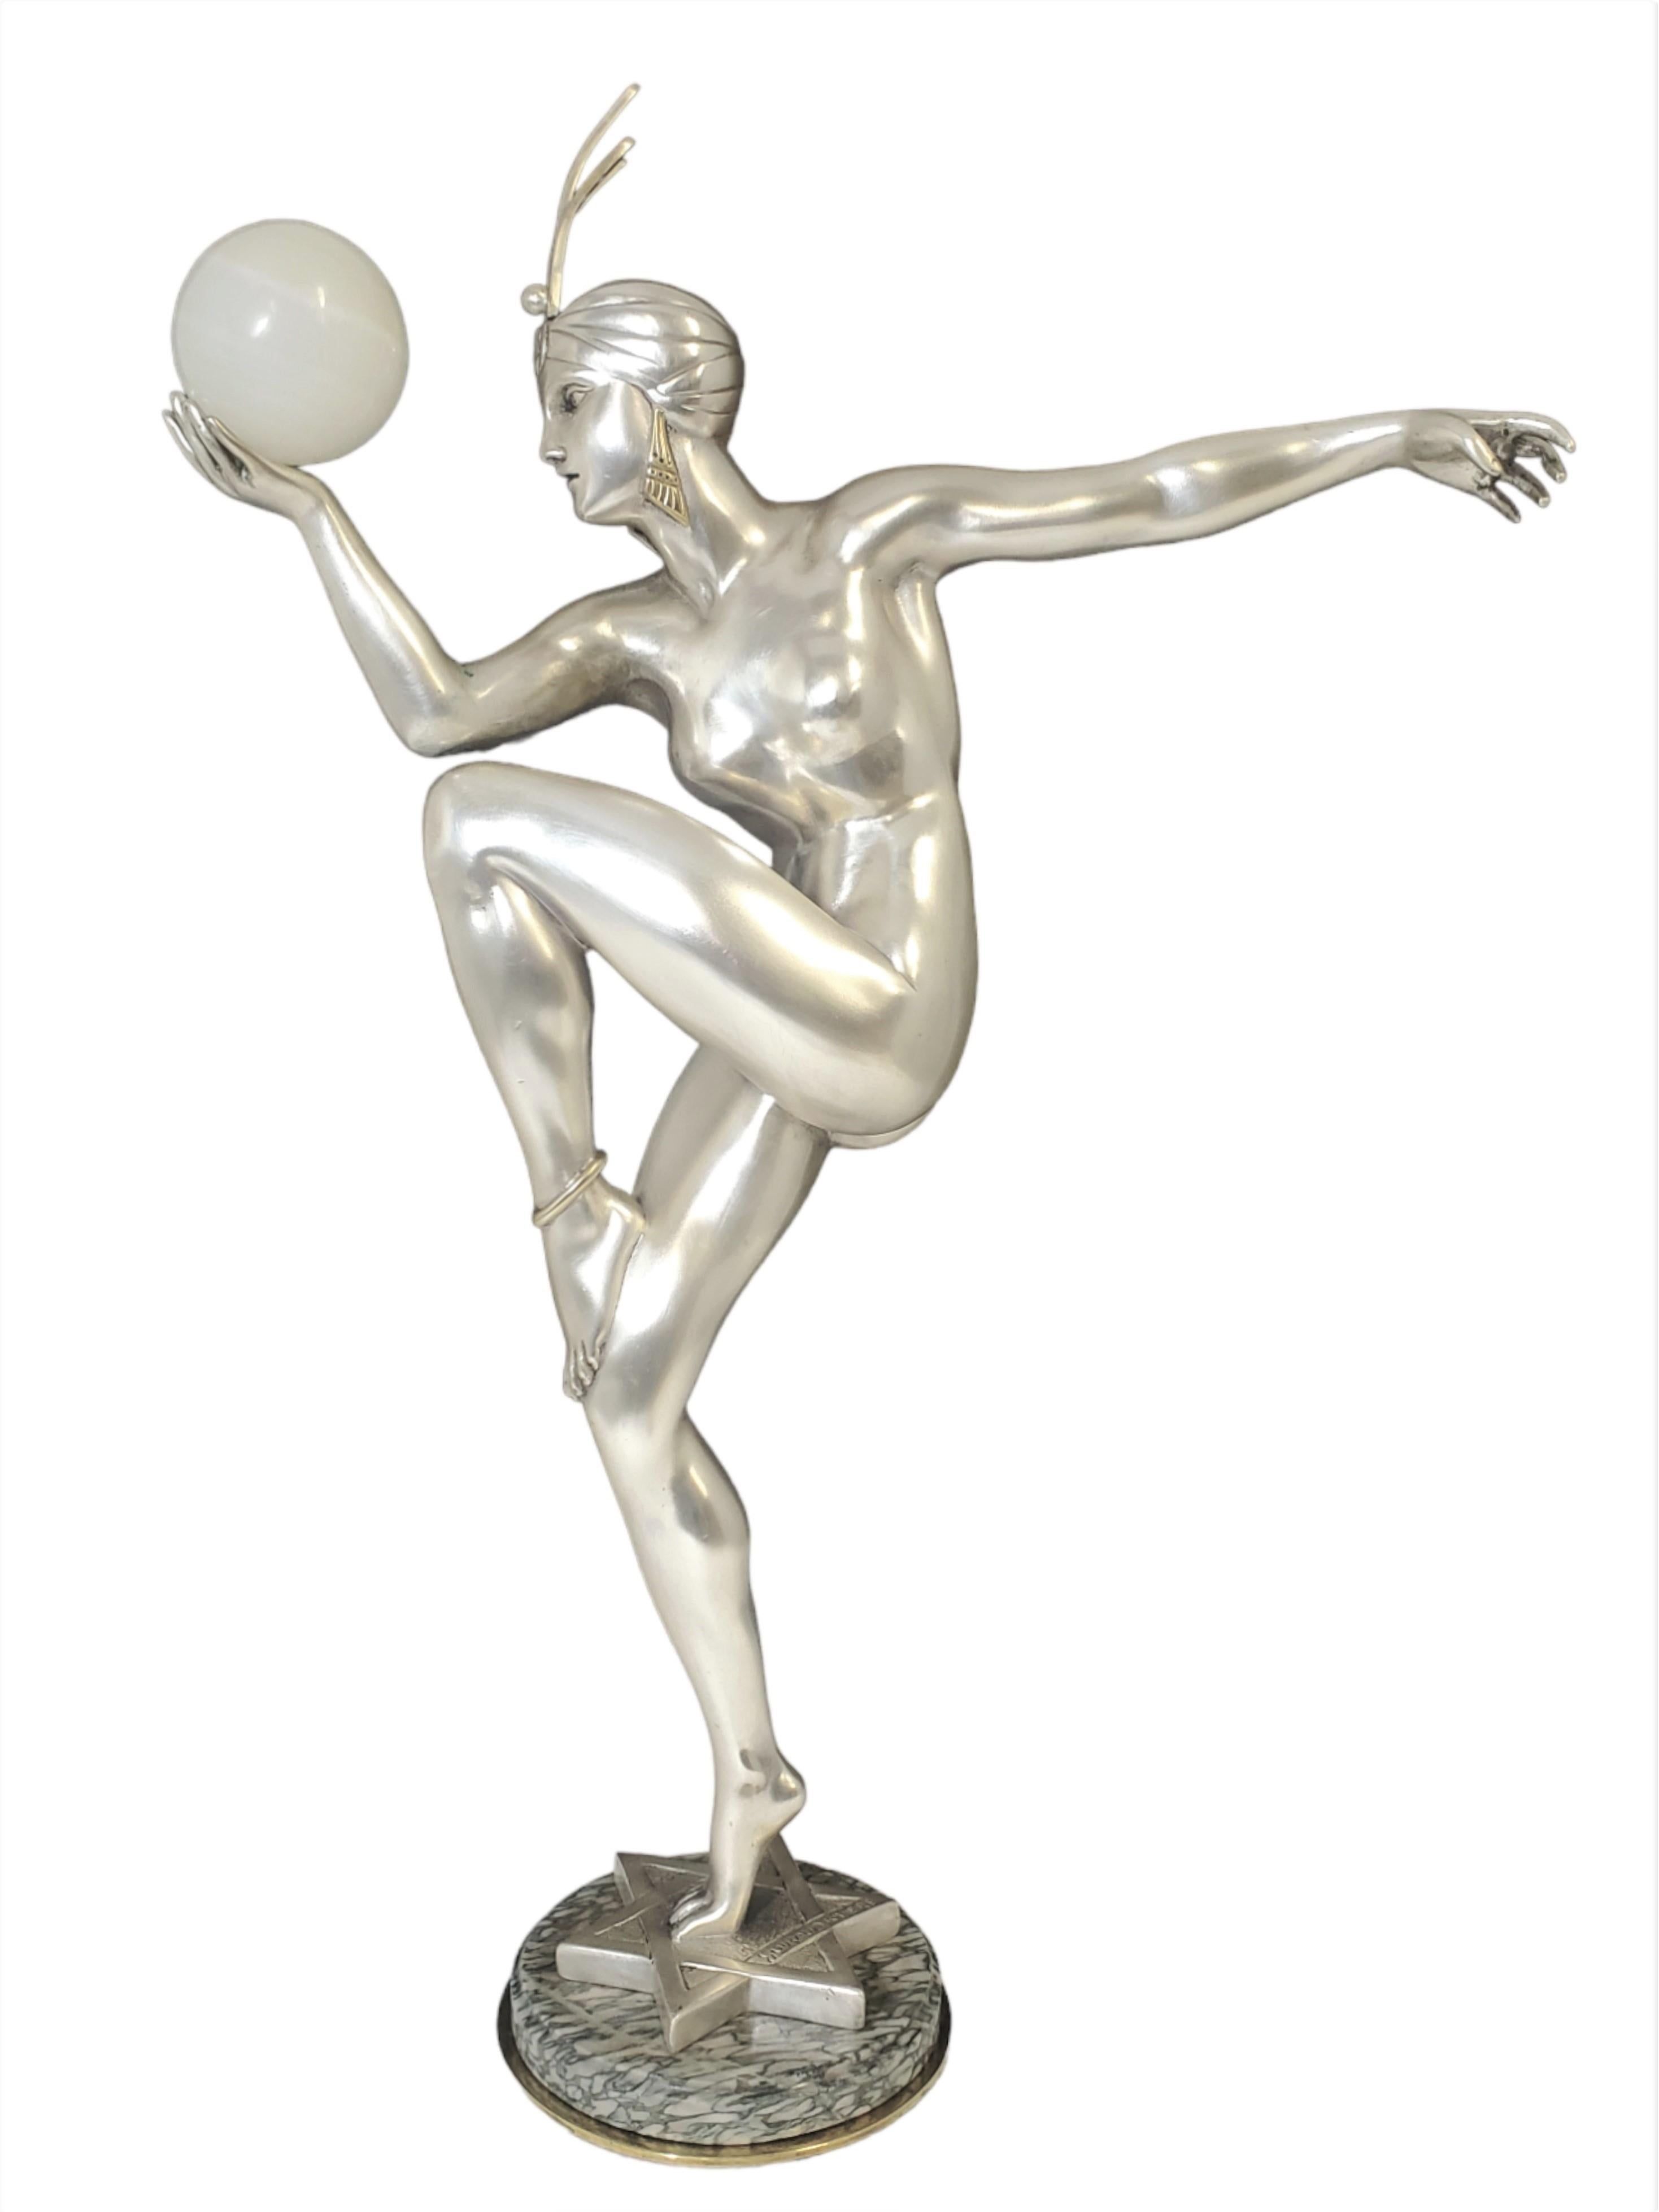 Guiraud-Rivière 1881-1947 
Une grande et exquise sculpture originale de l'Art déco français en bronze argenté avec des accents dorés parcellaires. Cette version la plus grande de la sculpture est une véritable rareté, tandis que la plus petite,